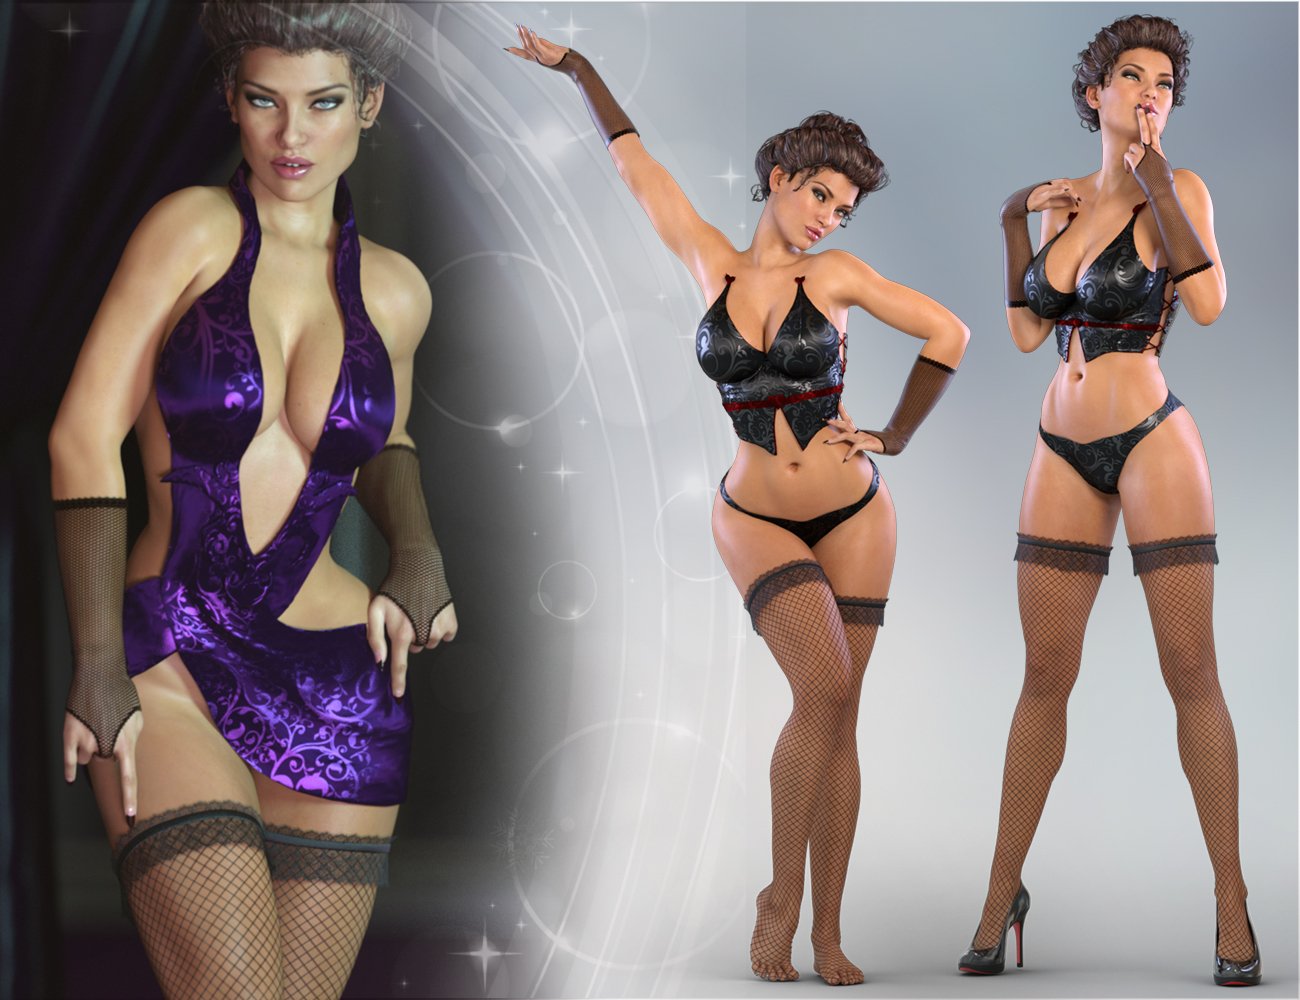 Z La Femme Fatale - Poses for Genesis 3 Female by: Zeddicuss, 3D Models by Daz 3D